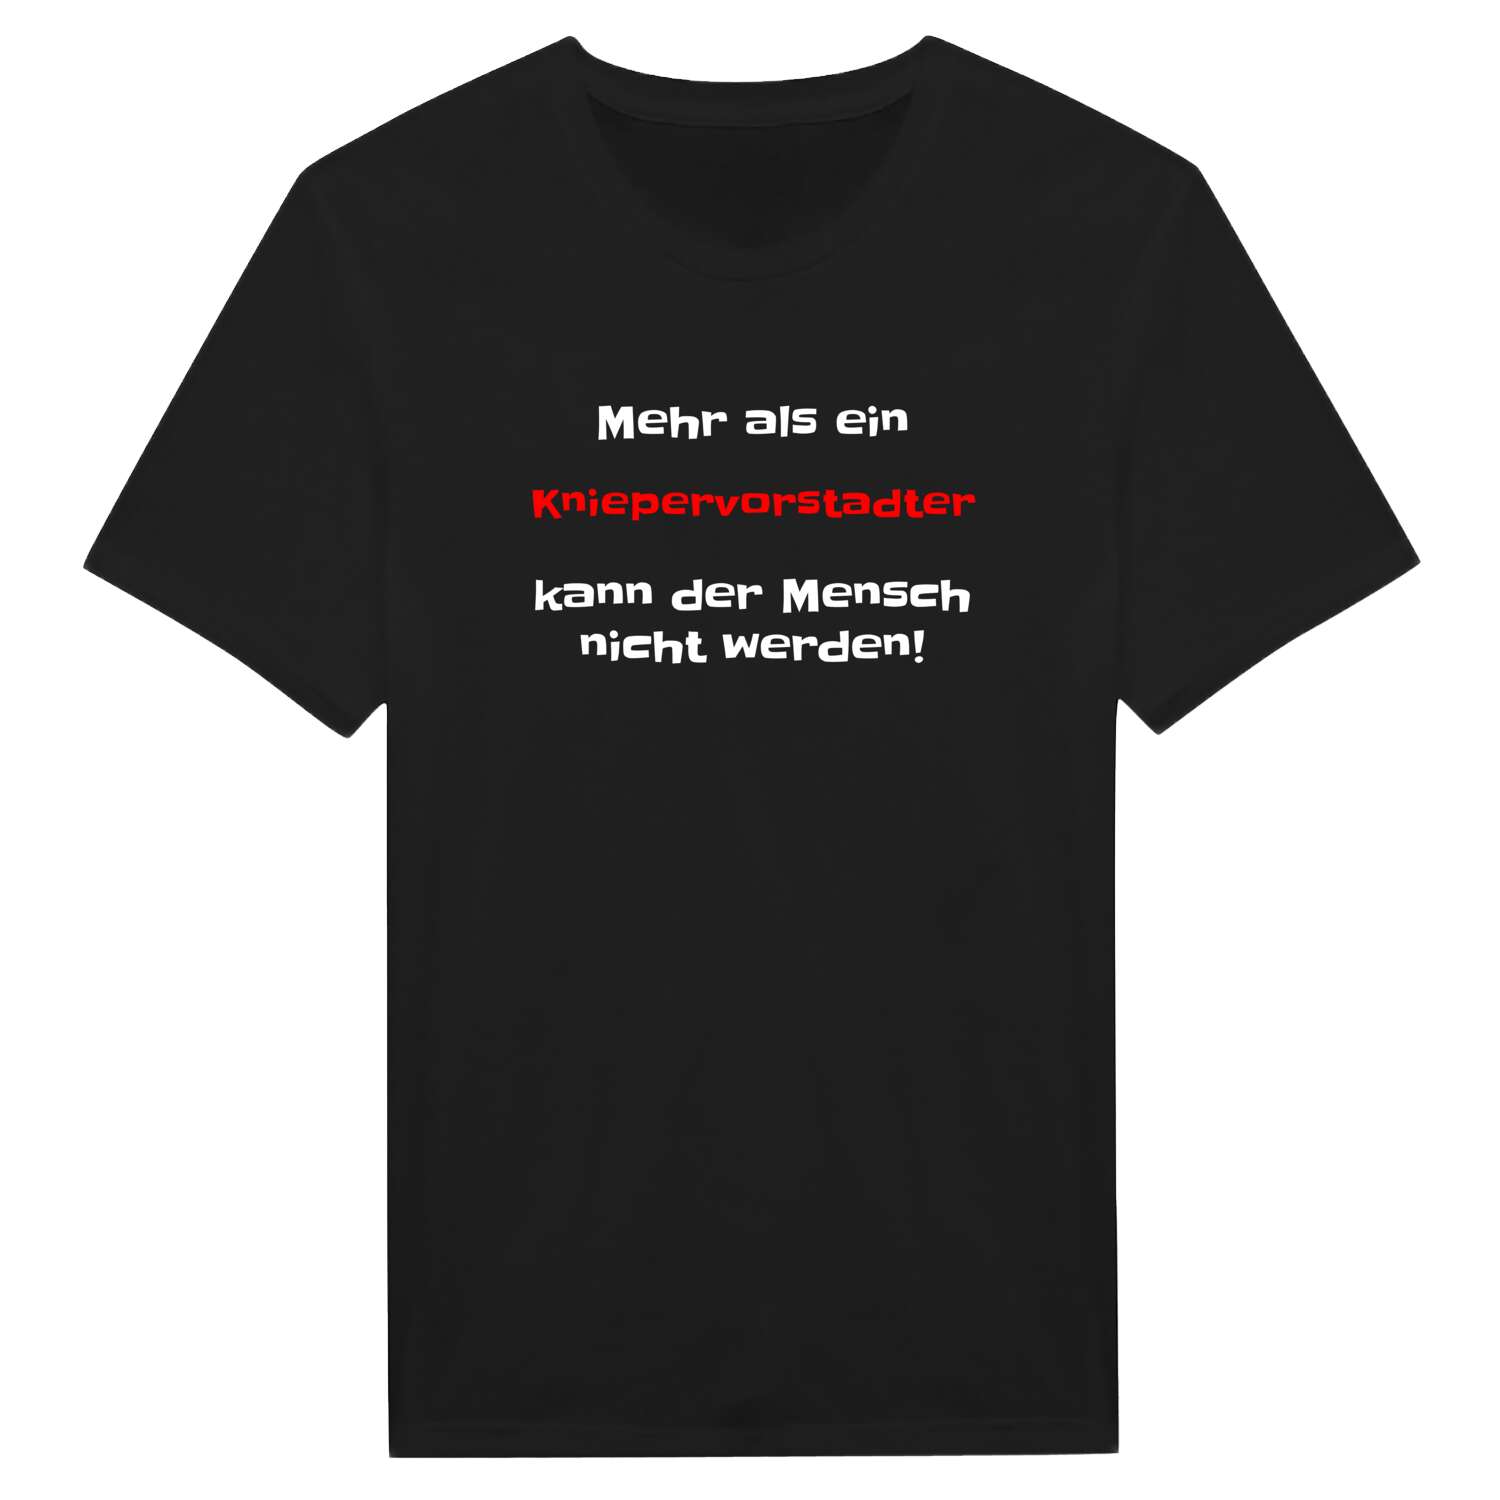 Kniepervorstadt T-Shirt »Mehr als ein«